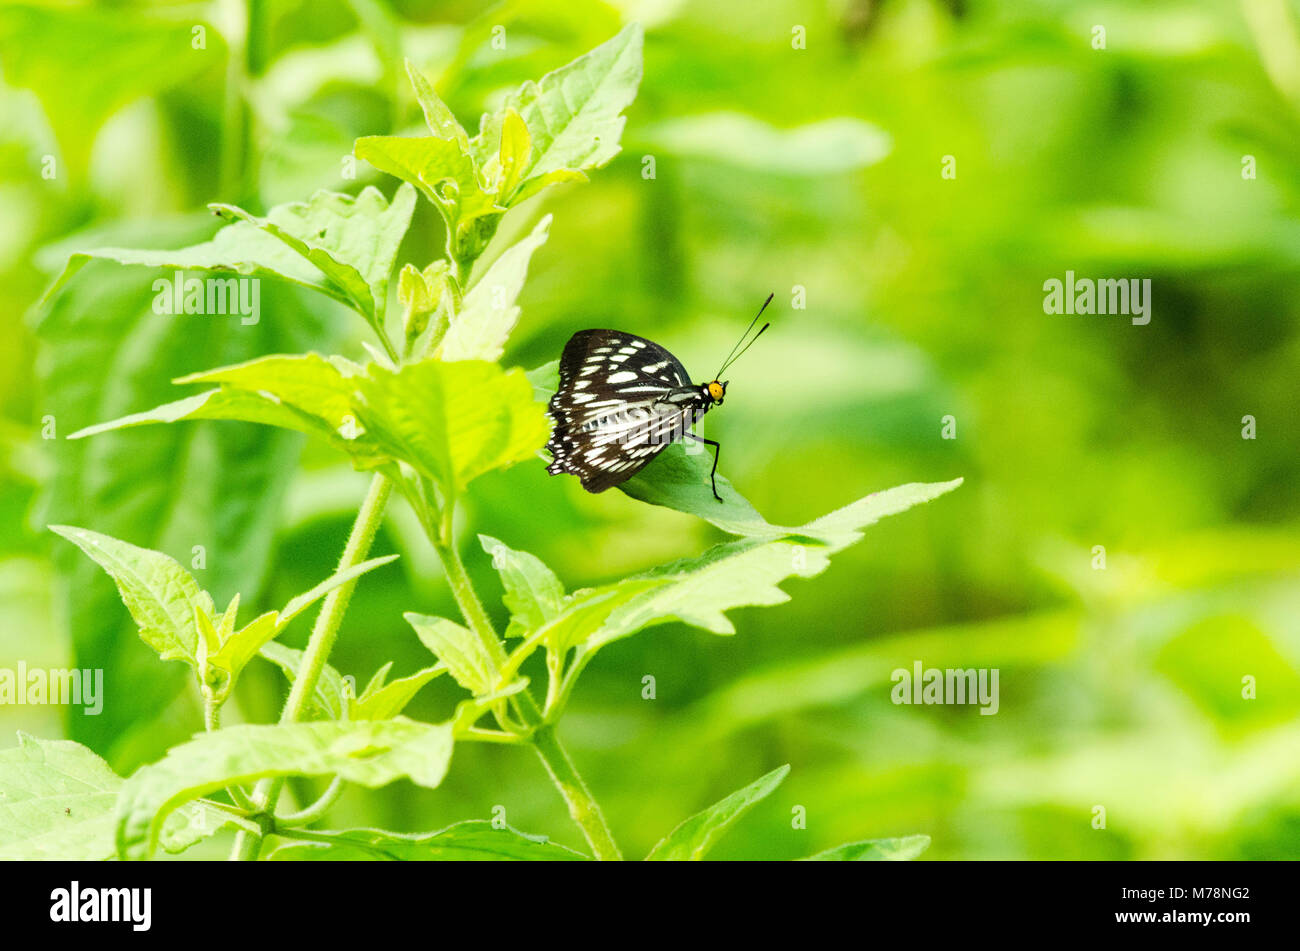 Butterfly showing it's beauty in greenery Stock Photo